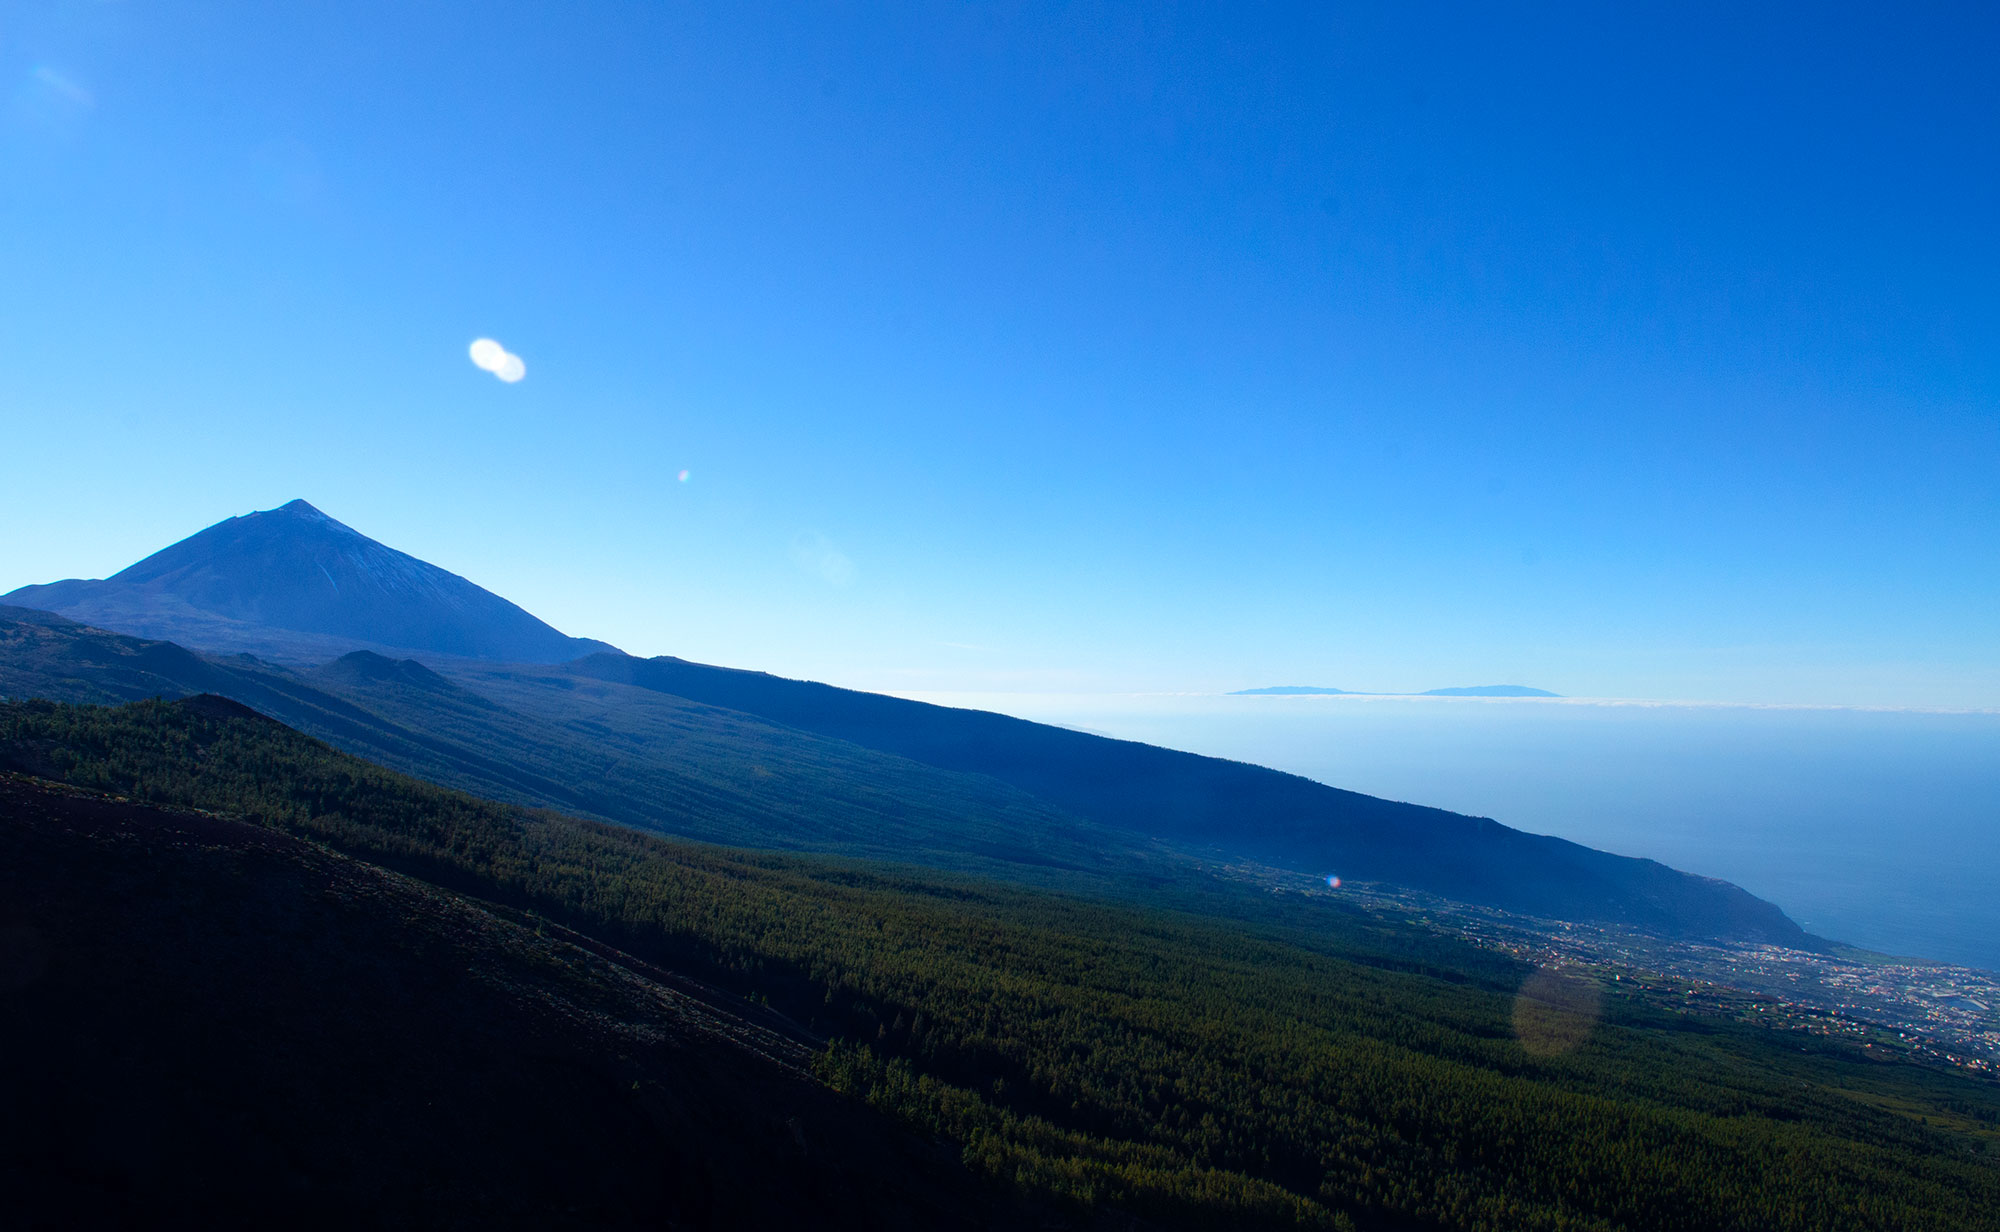 Teide and la orotava valley